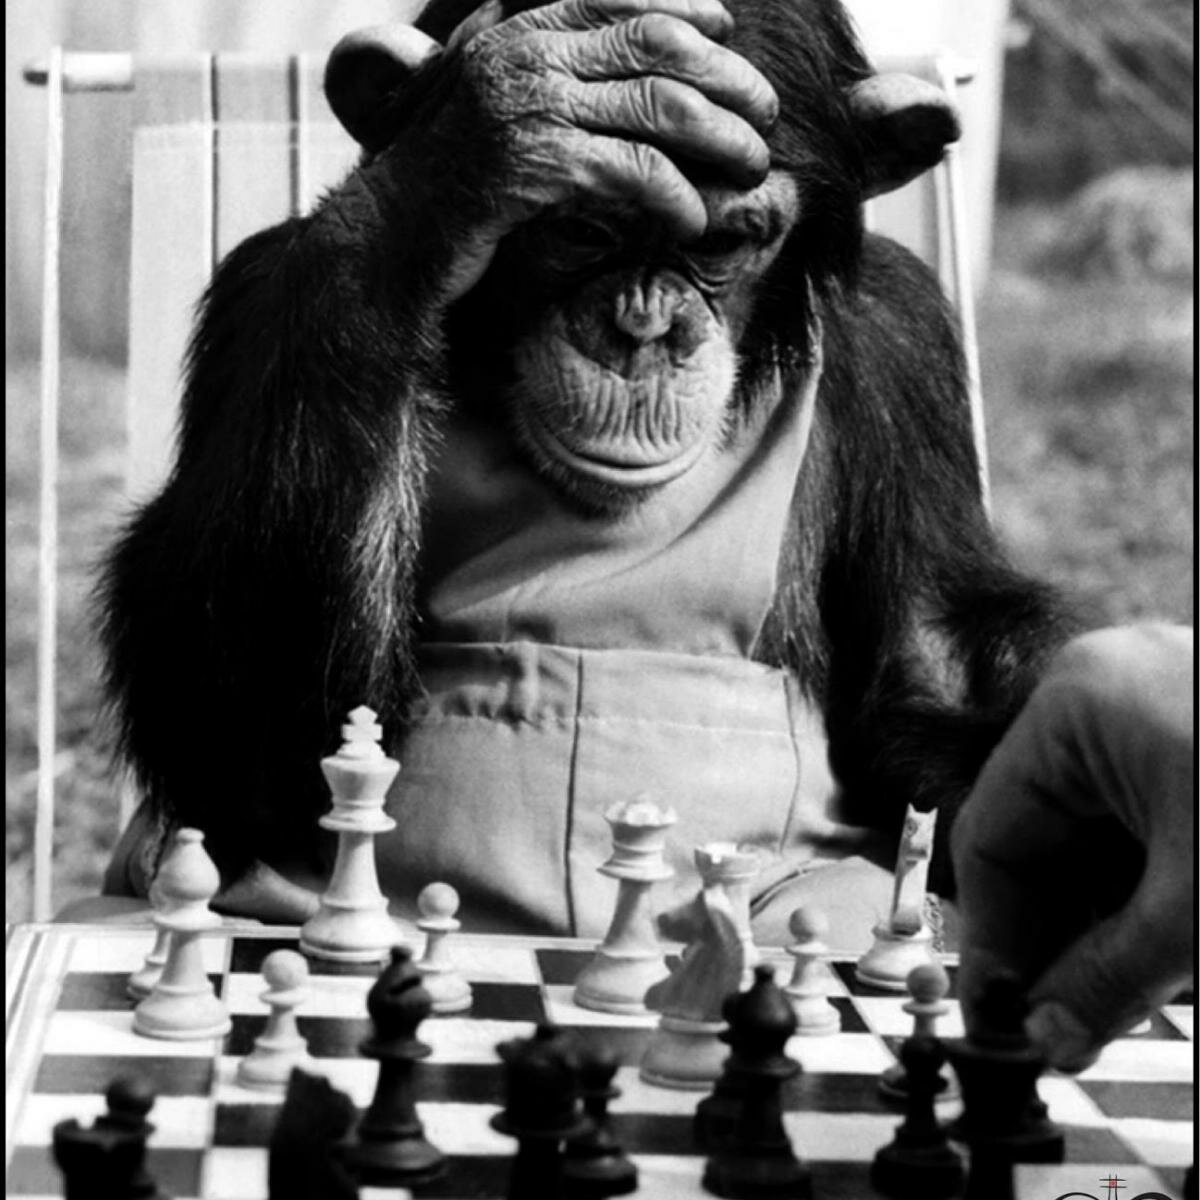 Шимпанзе играть. Обезьяна и шахматы. Обезьяна играет в шахматы. Обезьяна шахматист. Обезьяна за шахматами.